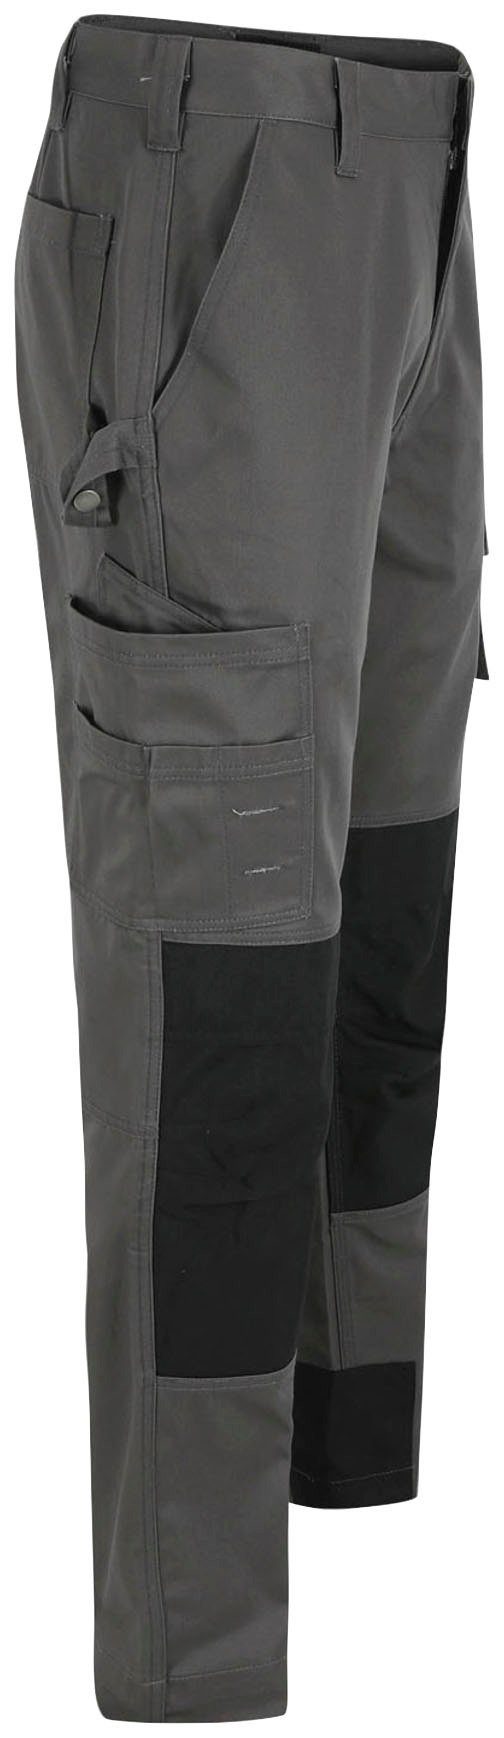 Herock Arbeitshose TITAN HOSE SHORTLEG grau 12 3-Naht, sehr wasserabweisend, Kurzgröβe, angenehm Taschen